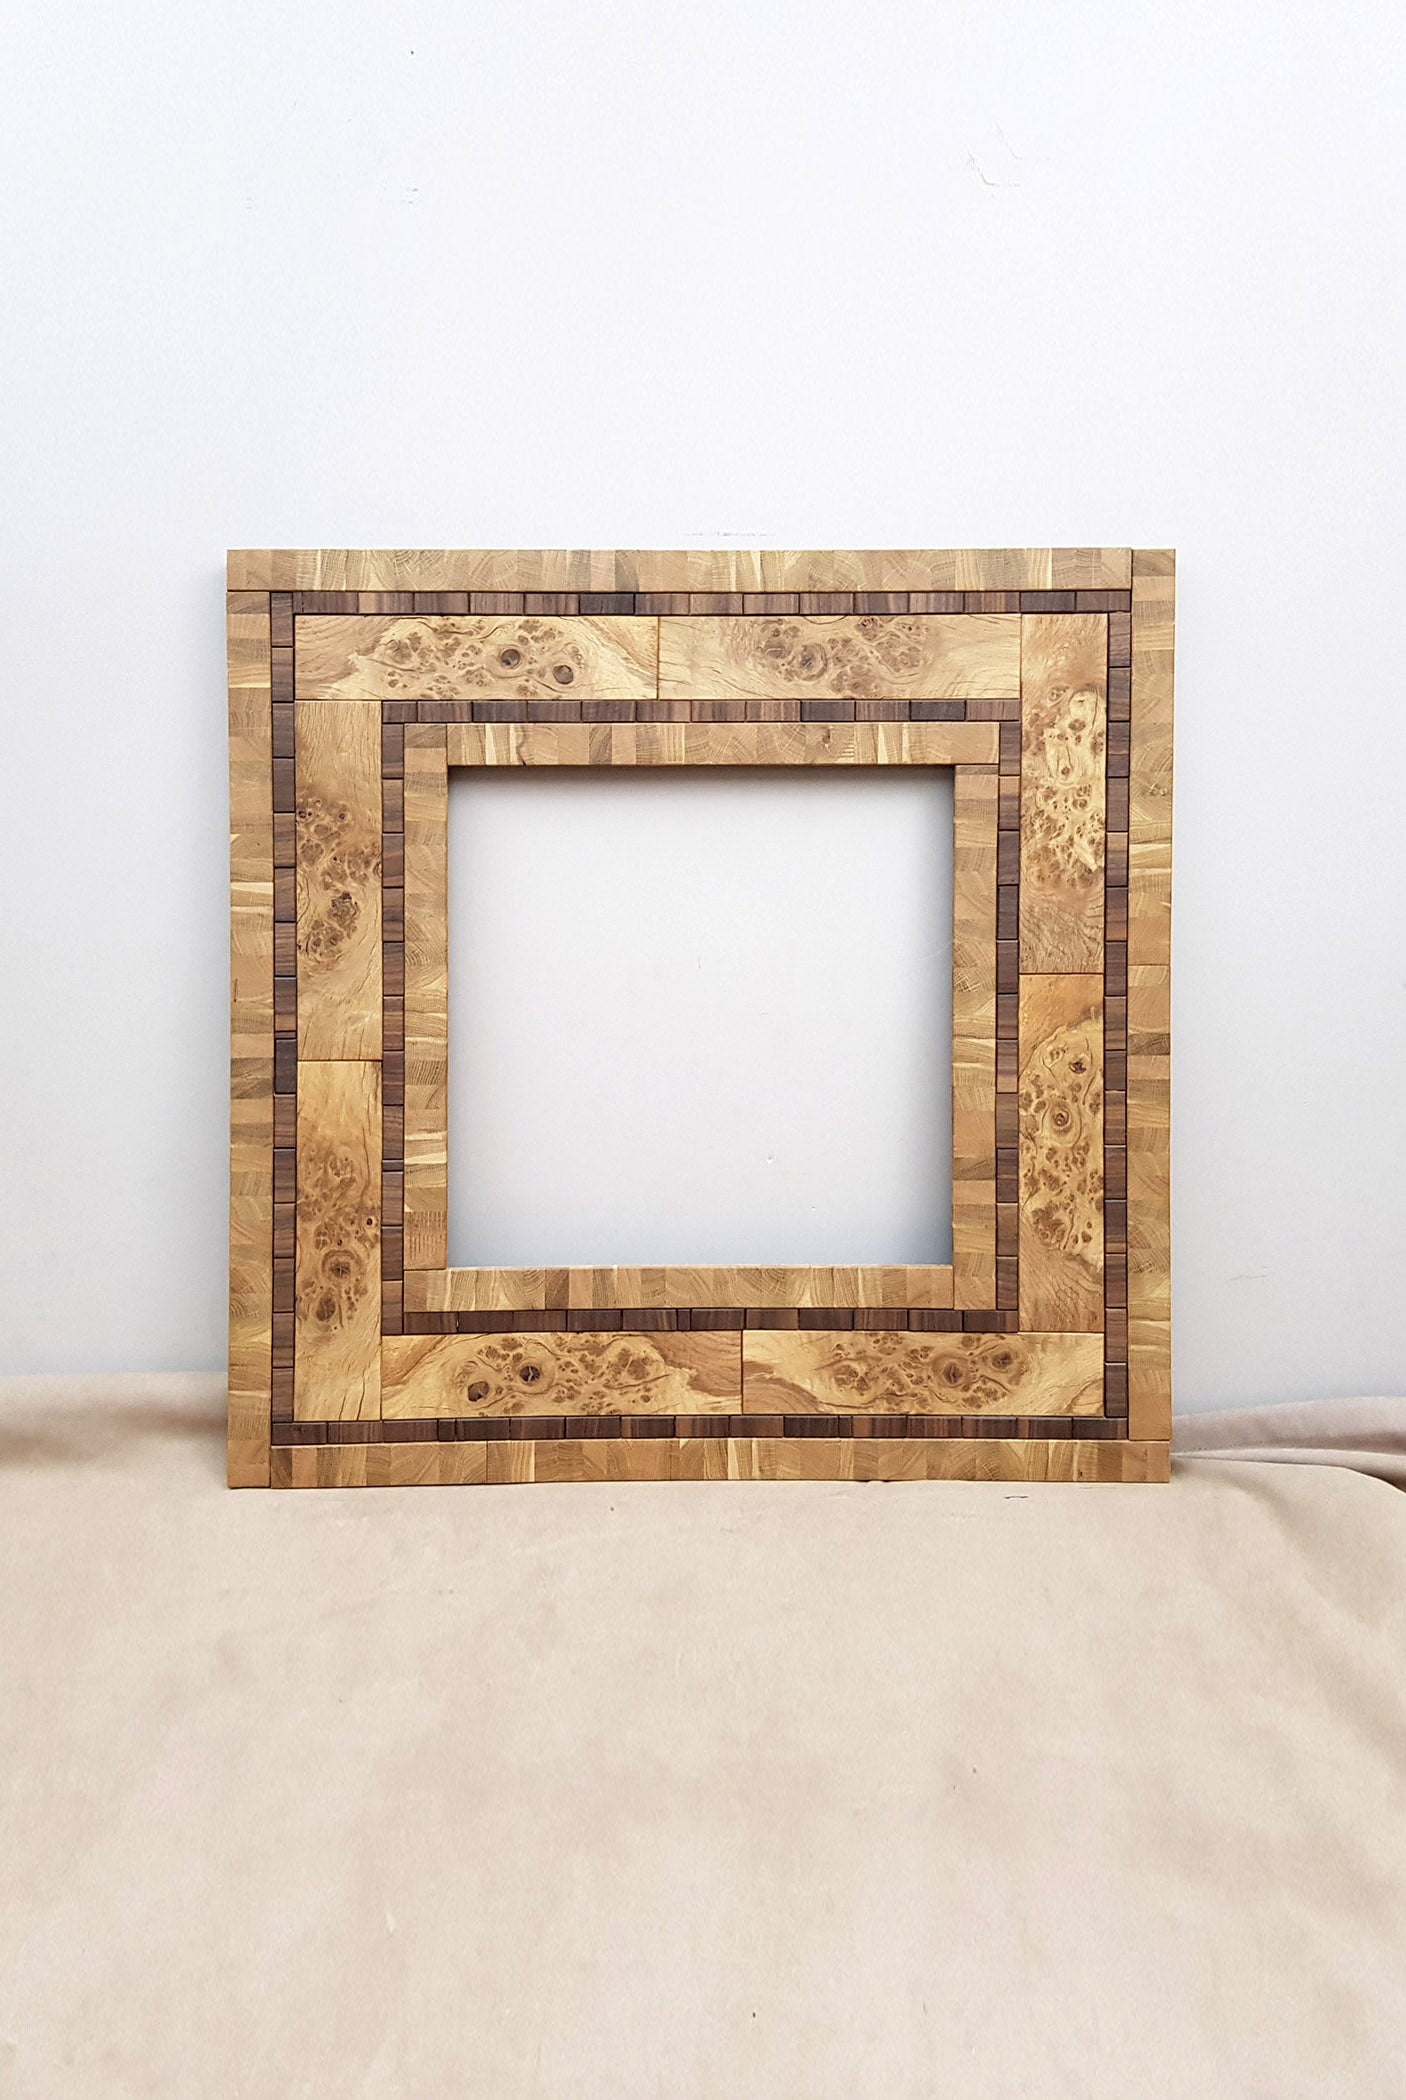 Centrepiece statement mirror frame in figured oak and walnut